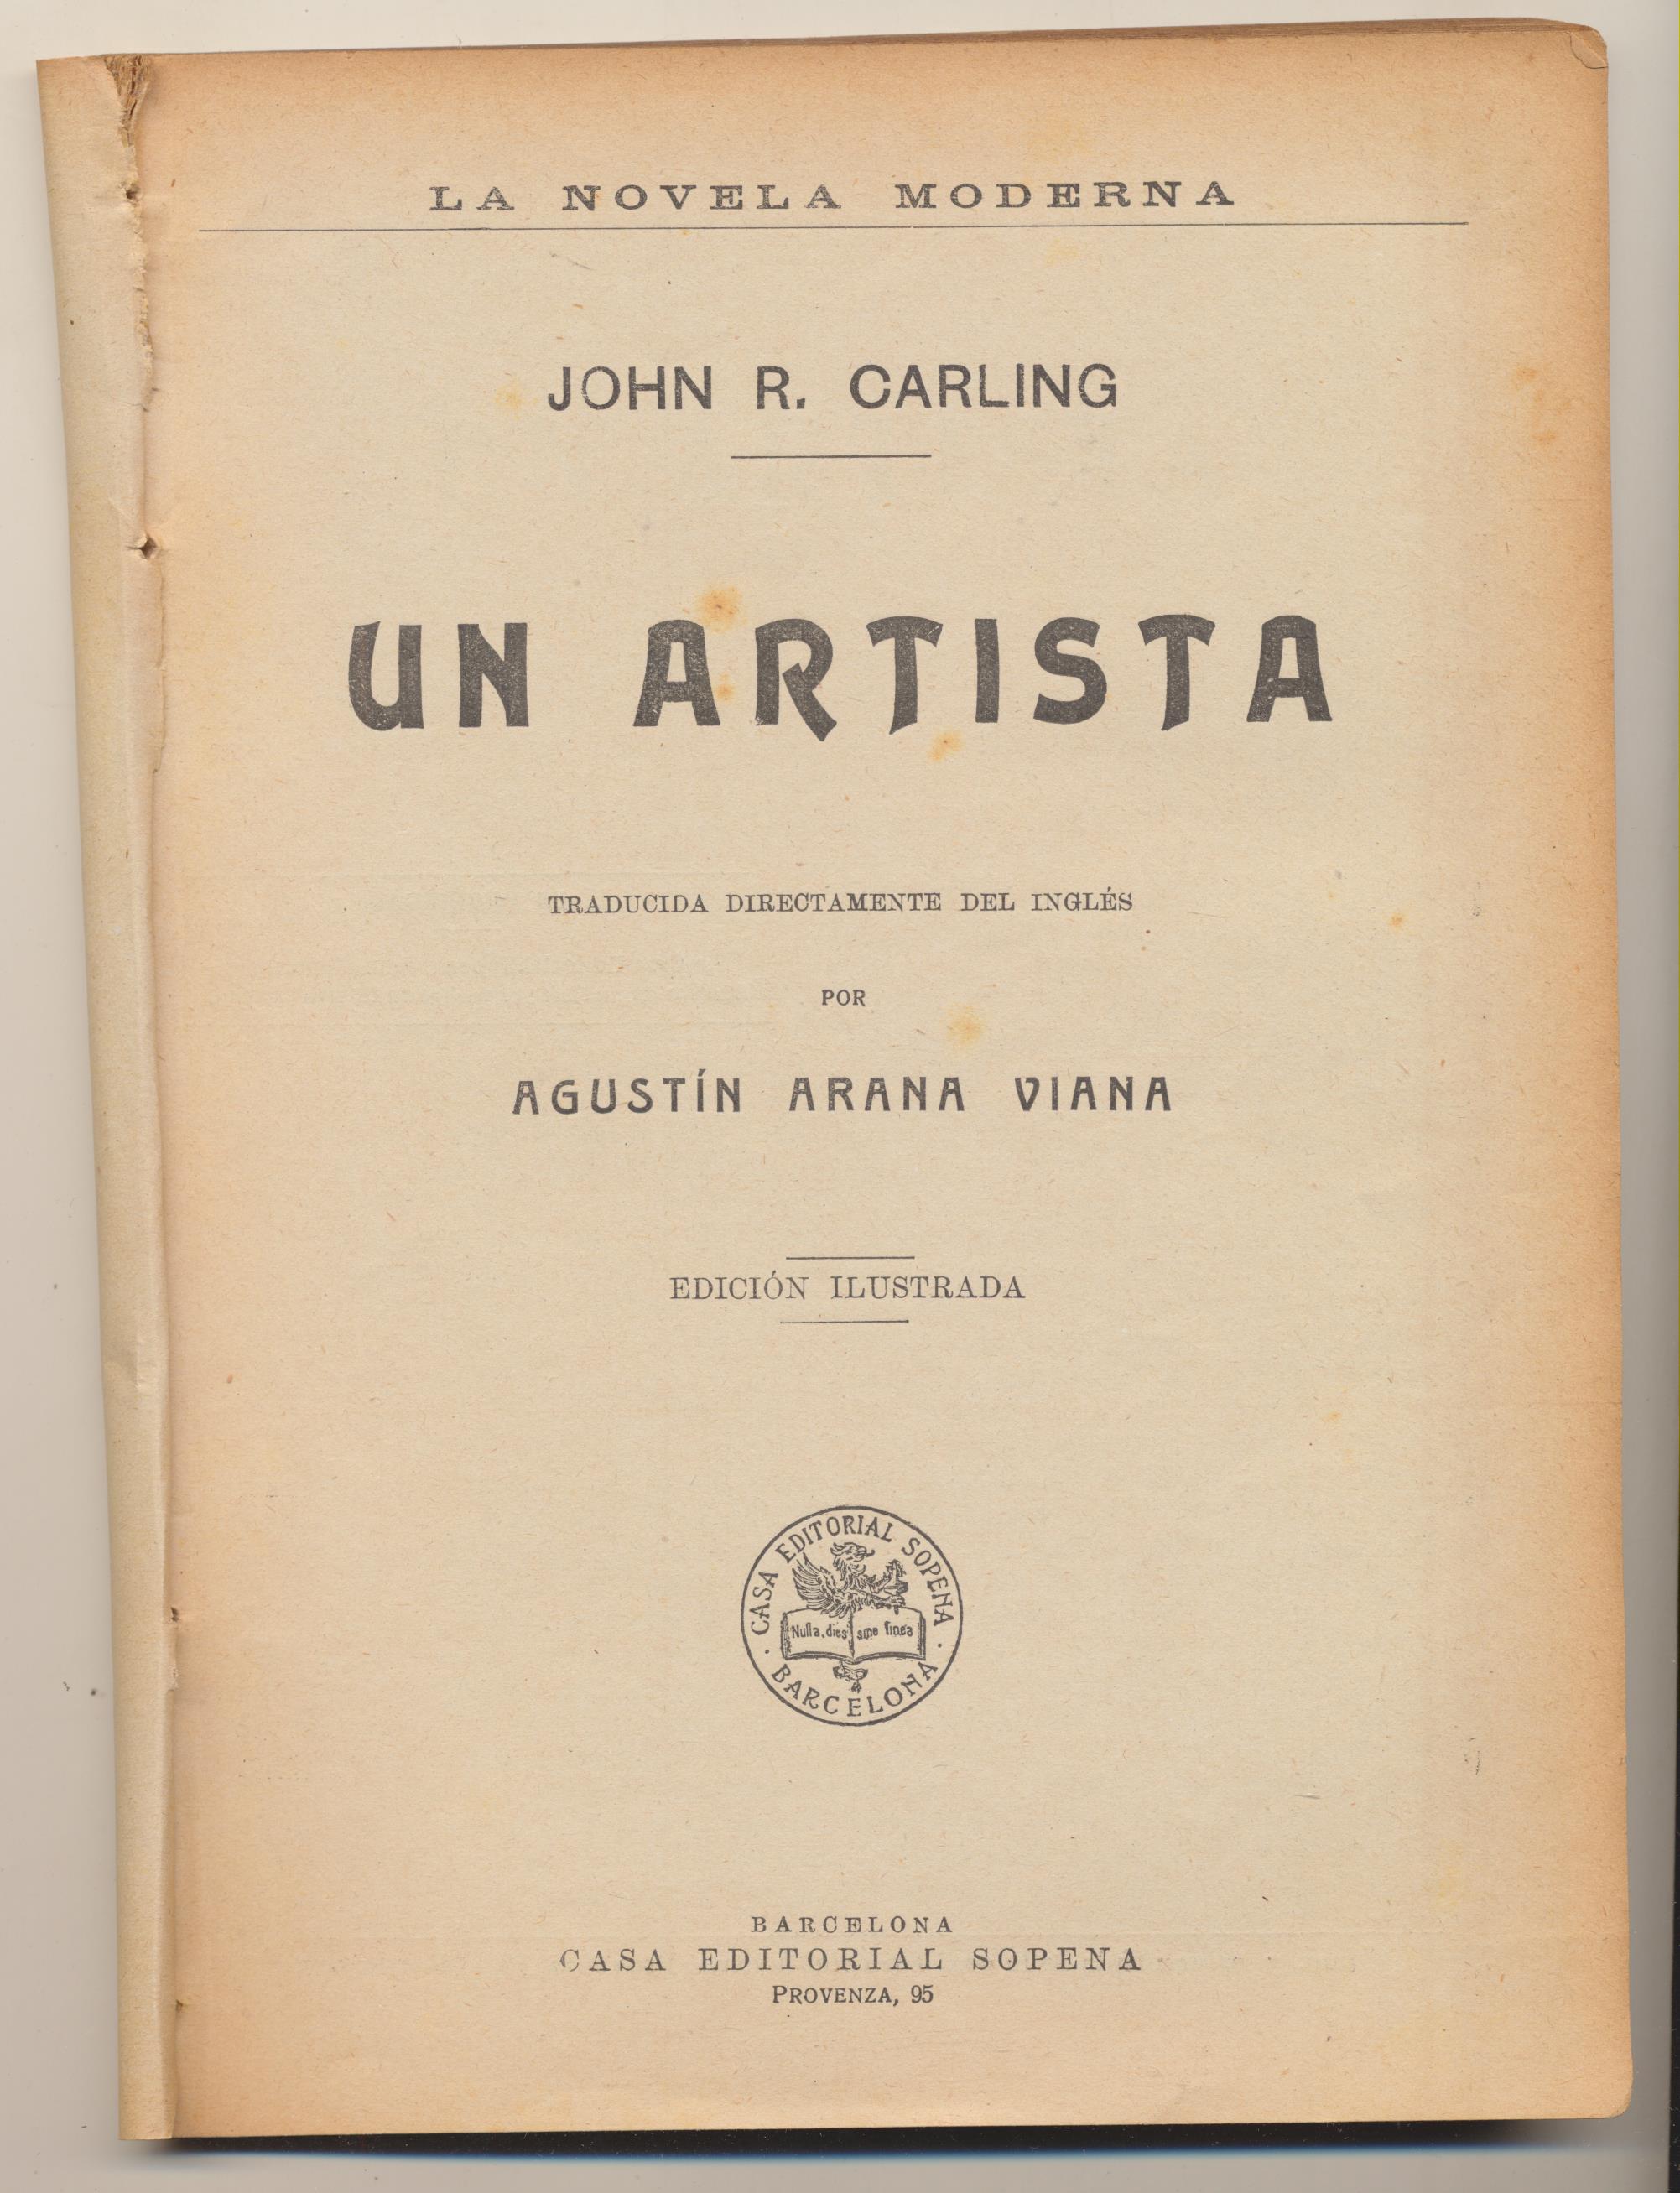 La Novela Moderna. John R. Carling. Un Artista. Editorial Sopena-Barcelona 19?? DIFÍCIL